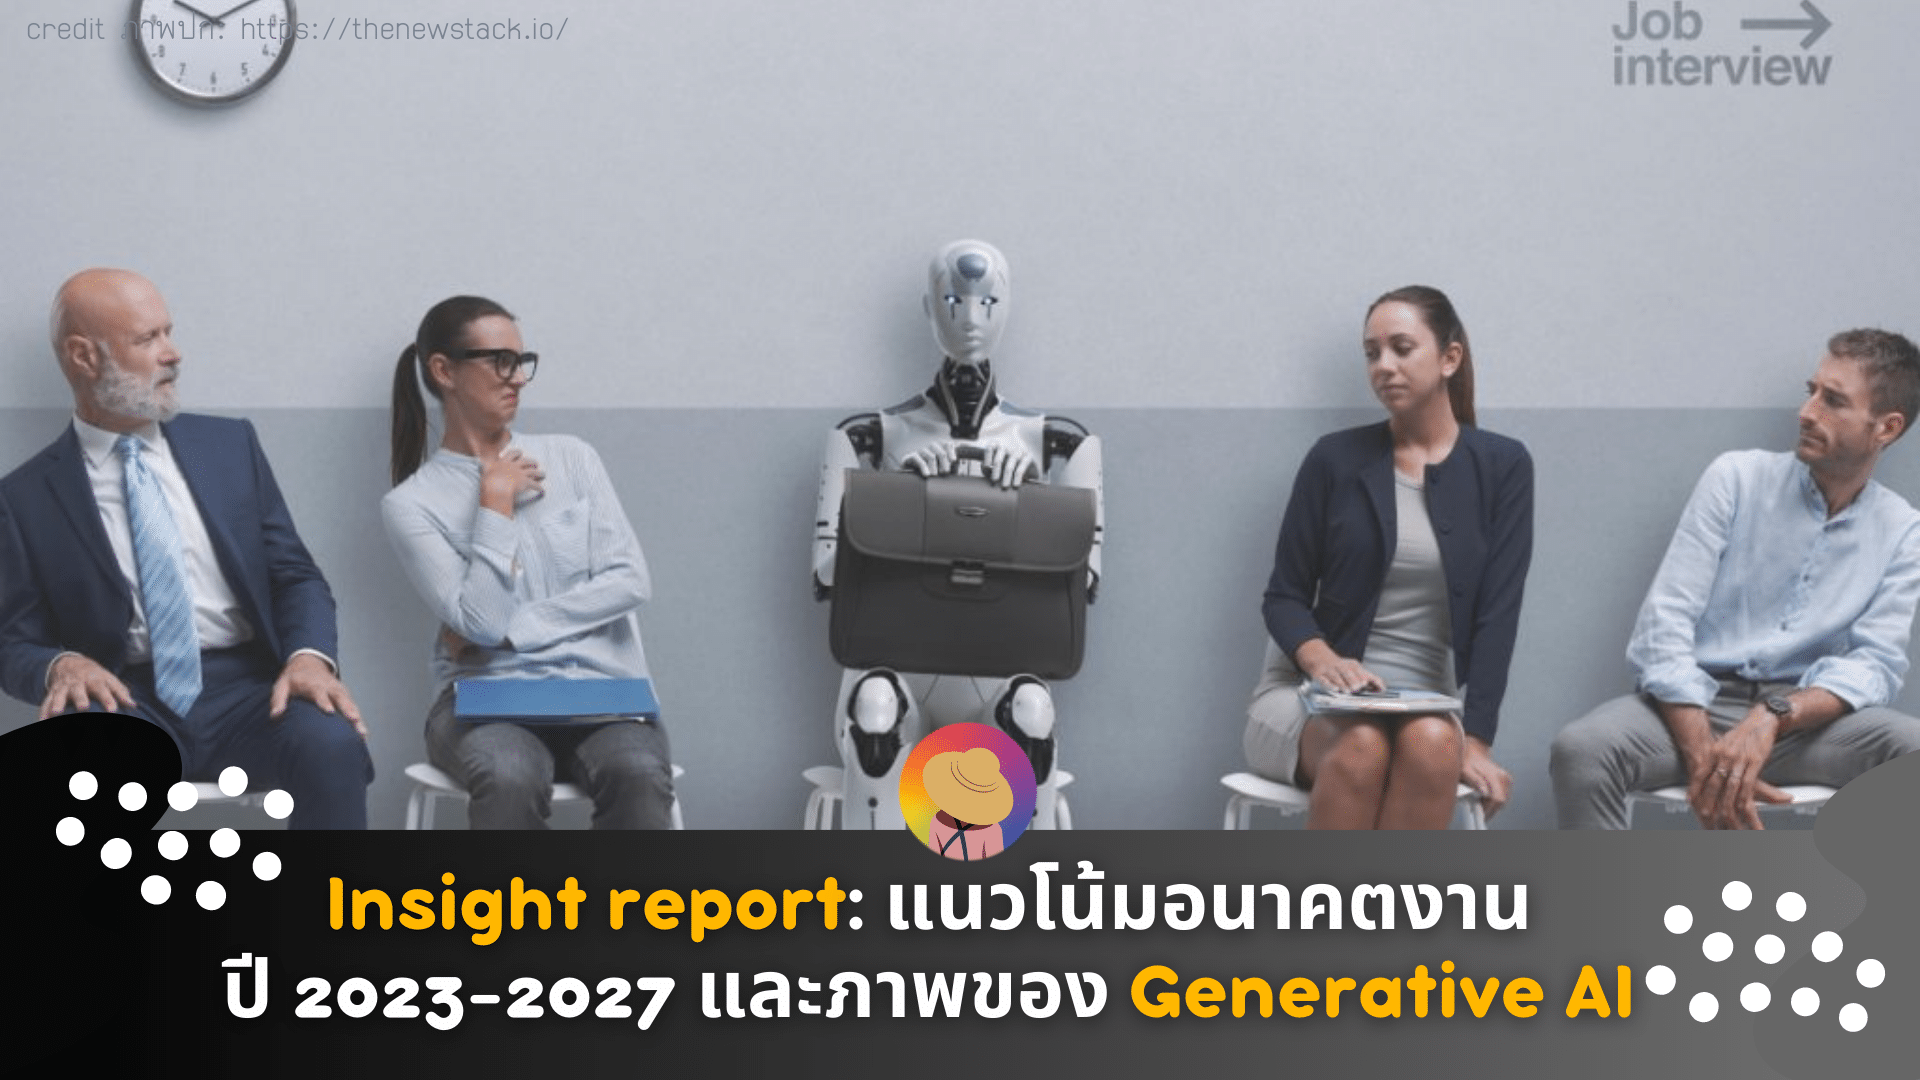 Insight report: แนวโน้มอนาคตของงานปี 2023-2027 และภาพของ Generative AI